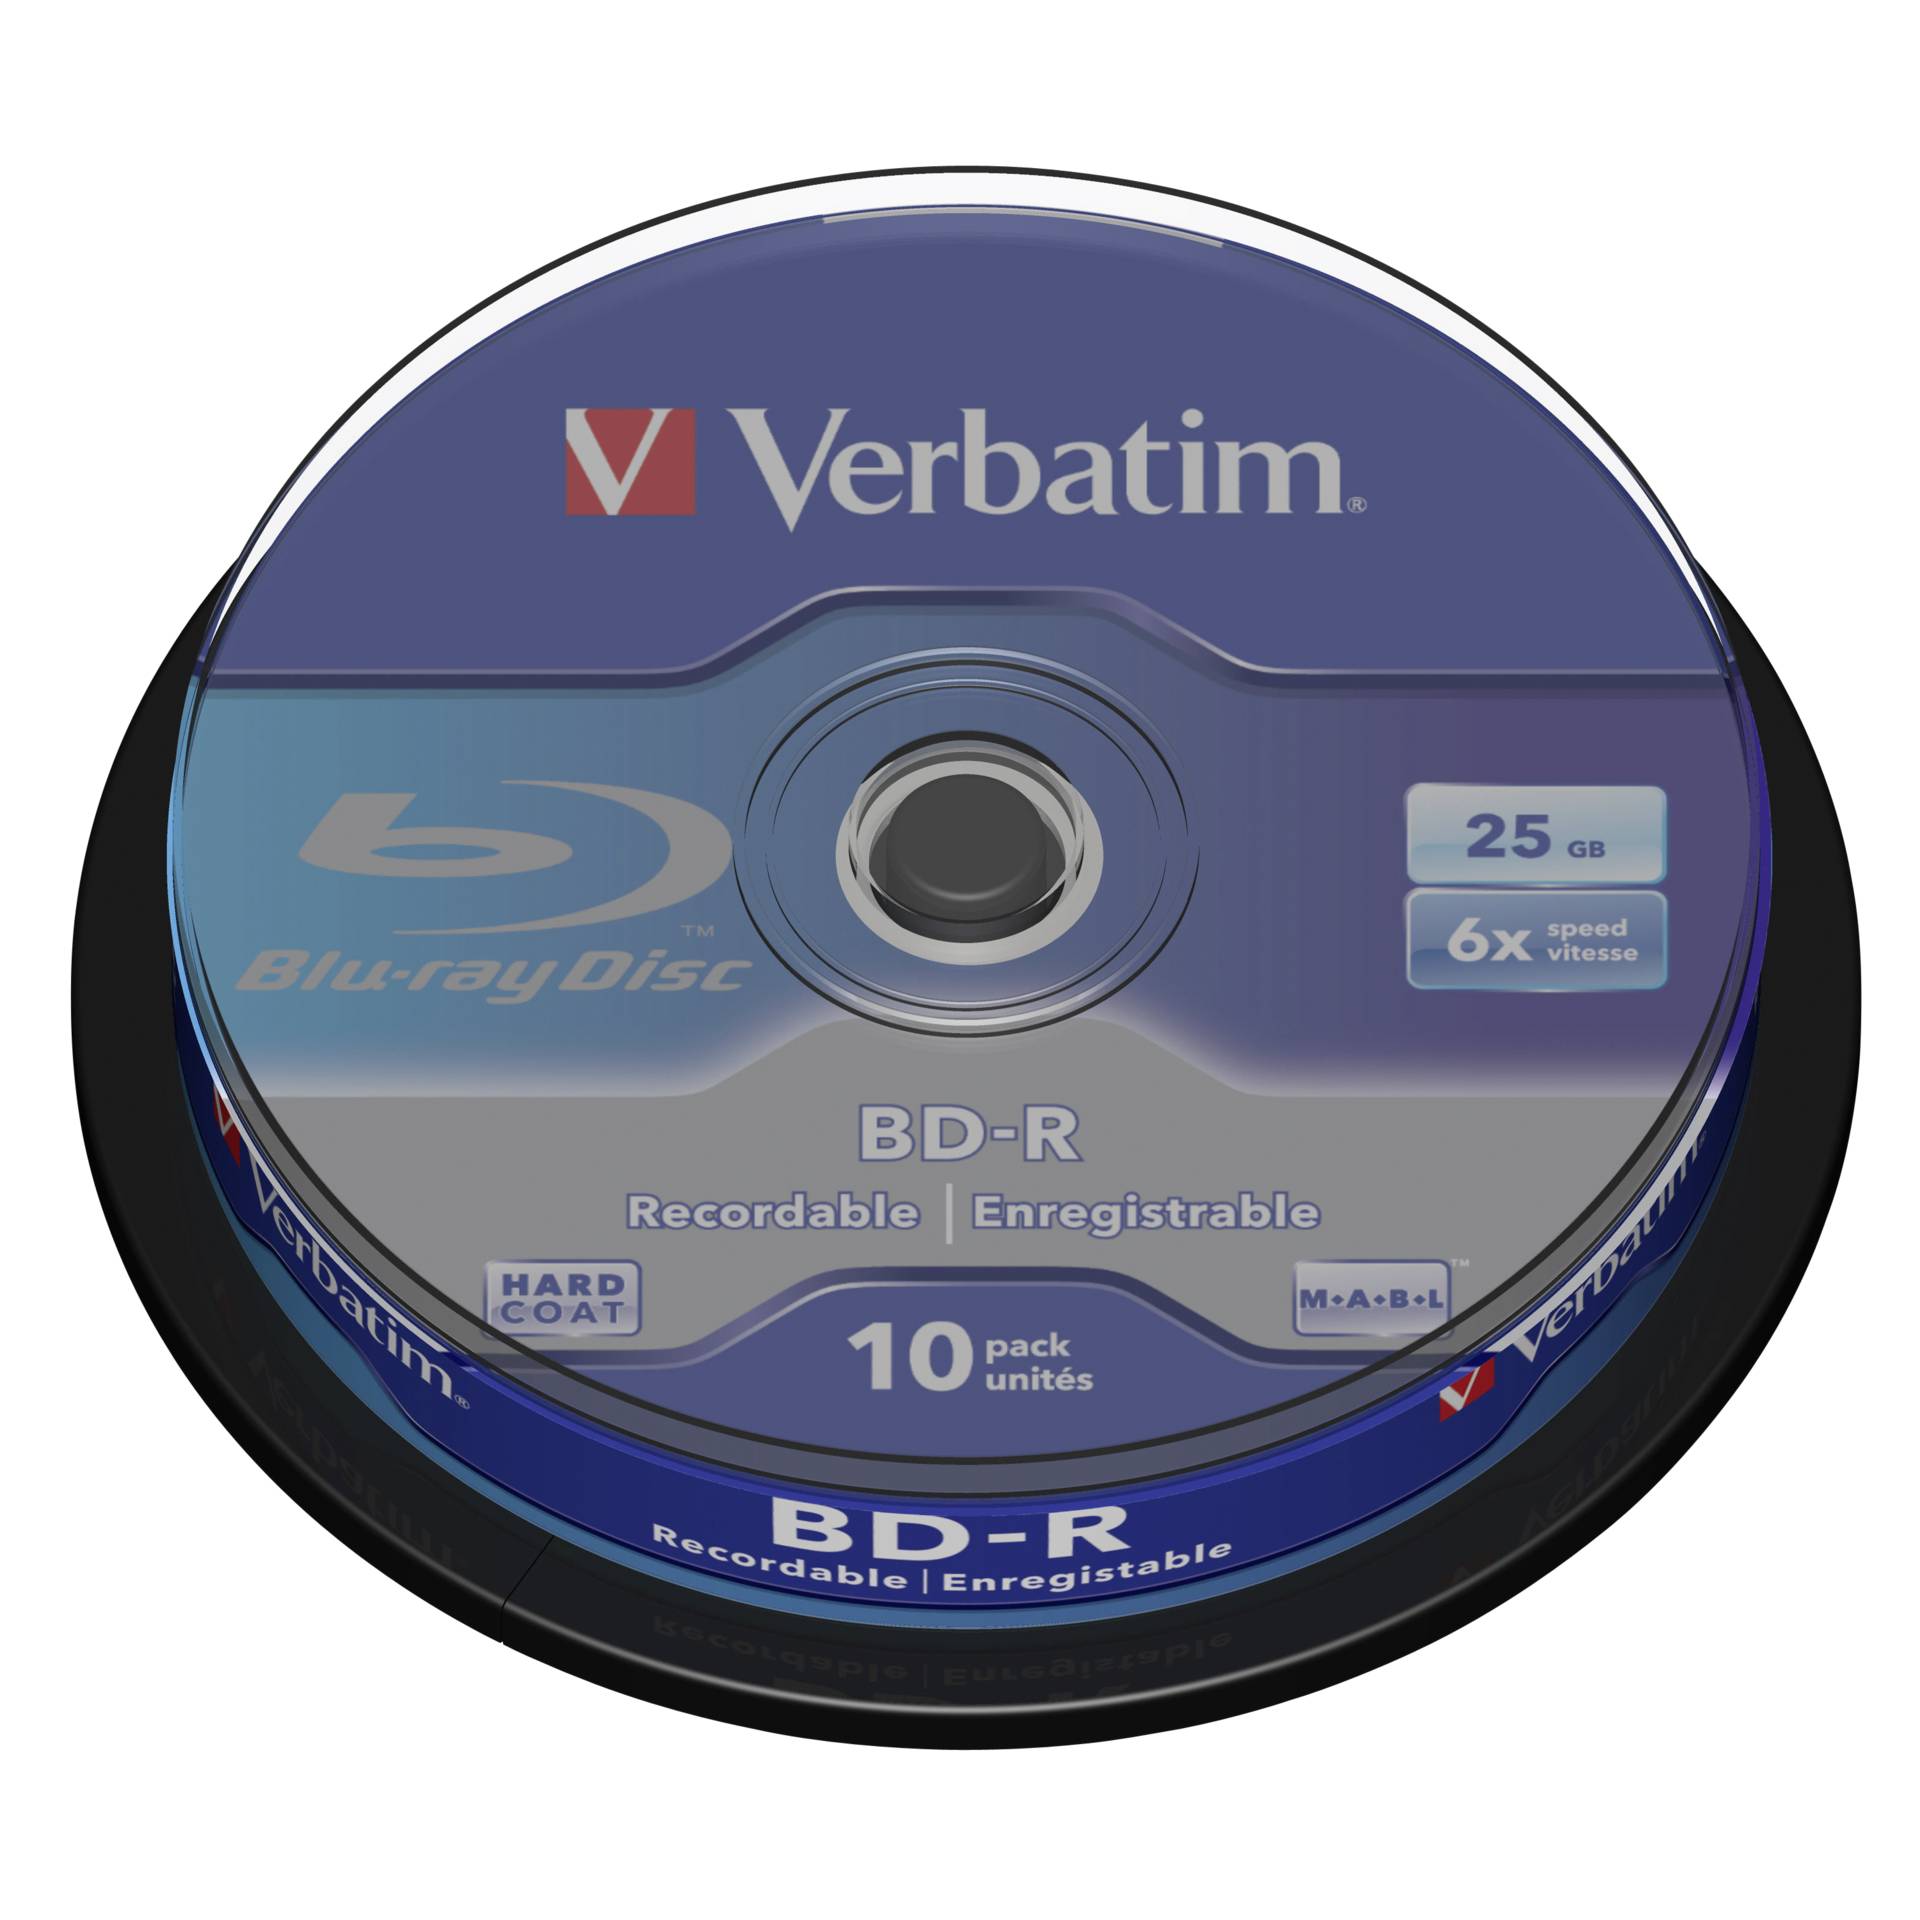 Verbatim BD-R 6x 10er Spindel 25GB Blu-Ray-Rohlinge 